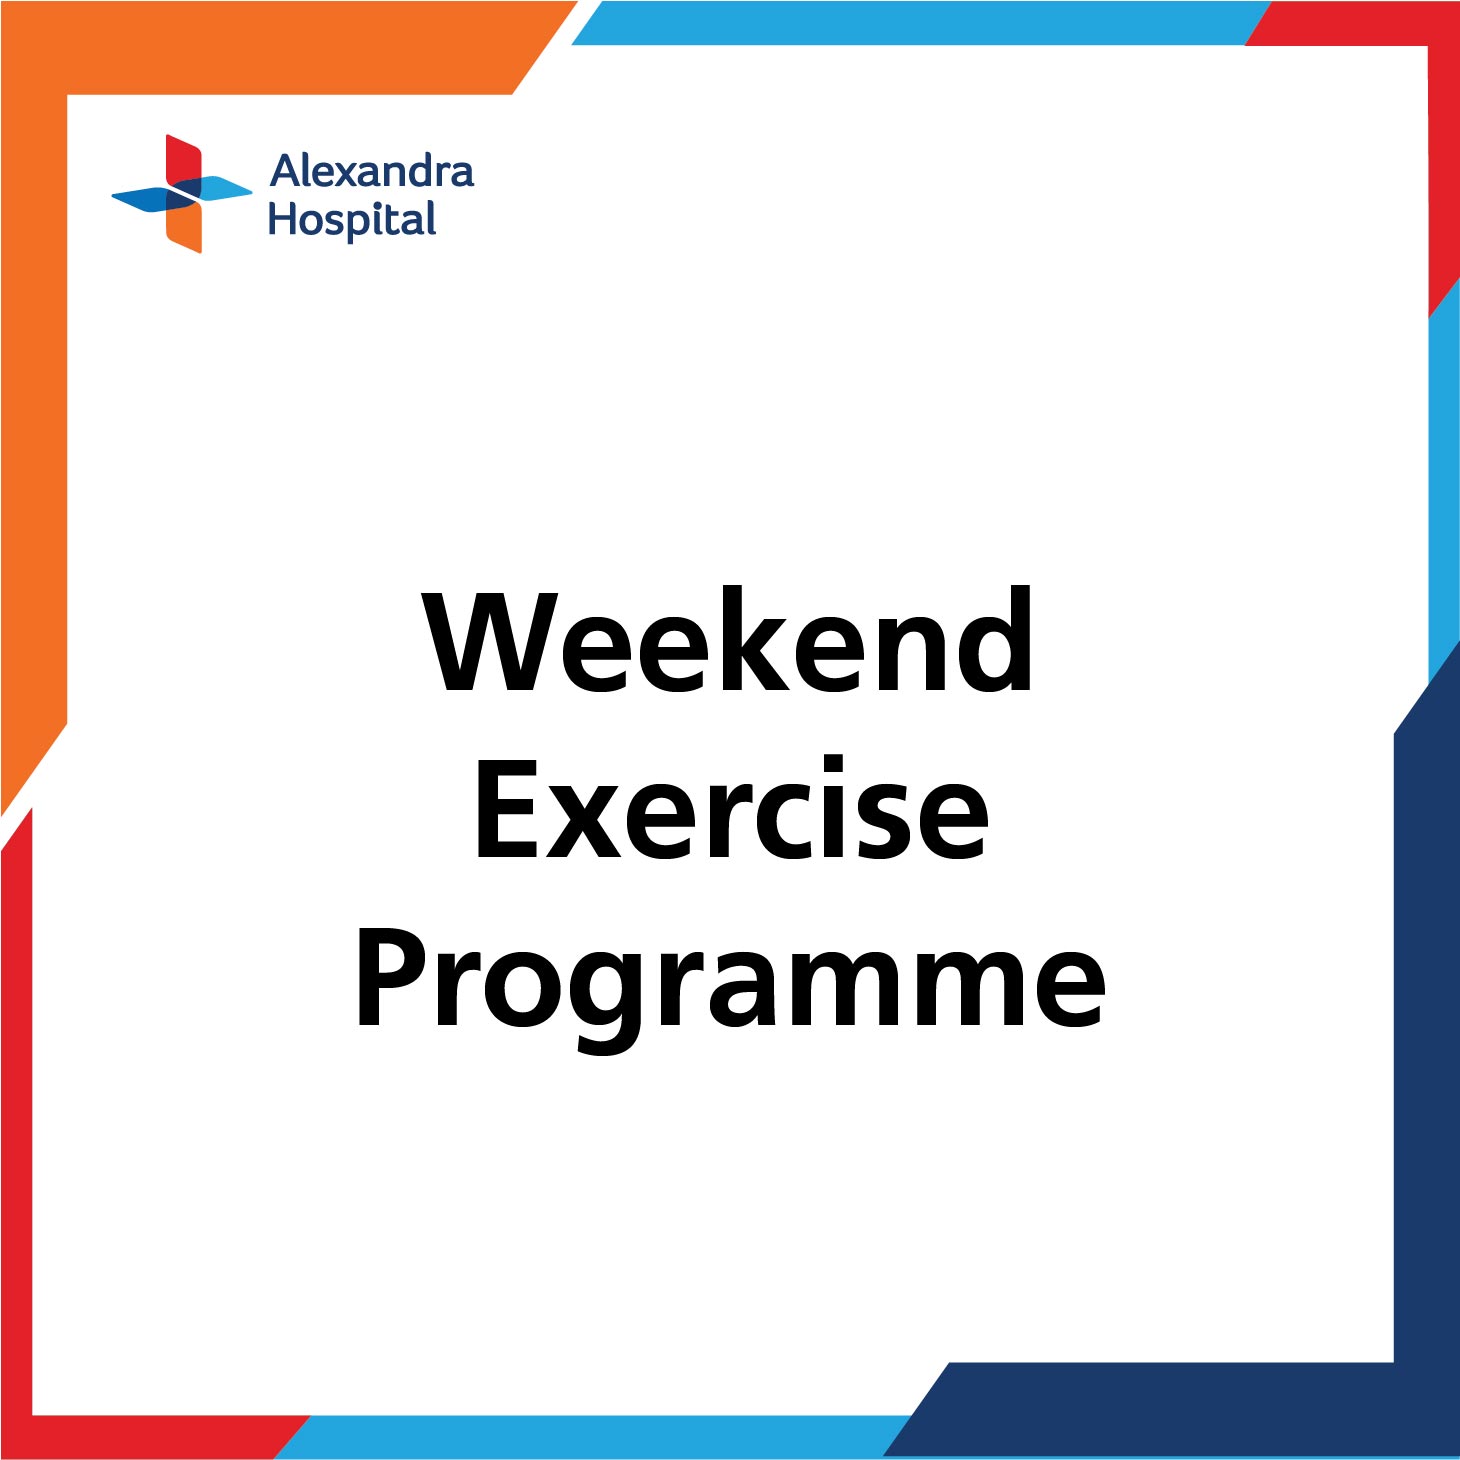 Weekend Exercise Programme